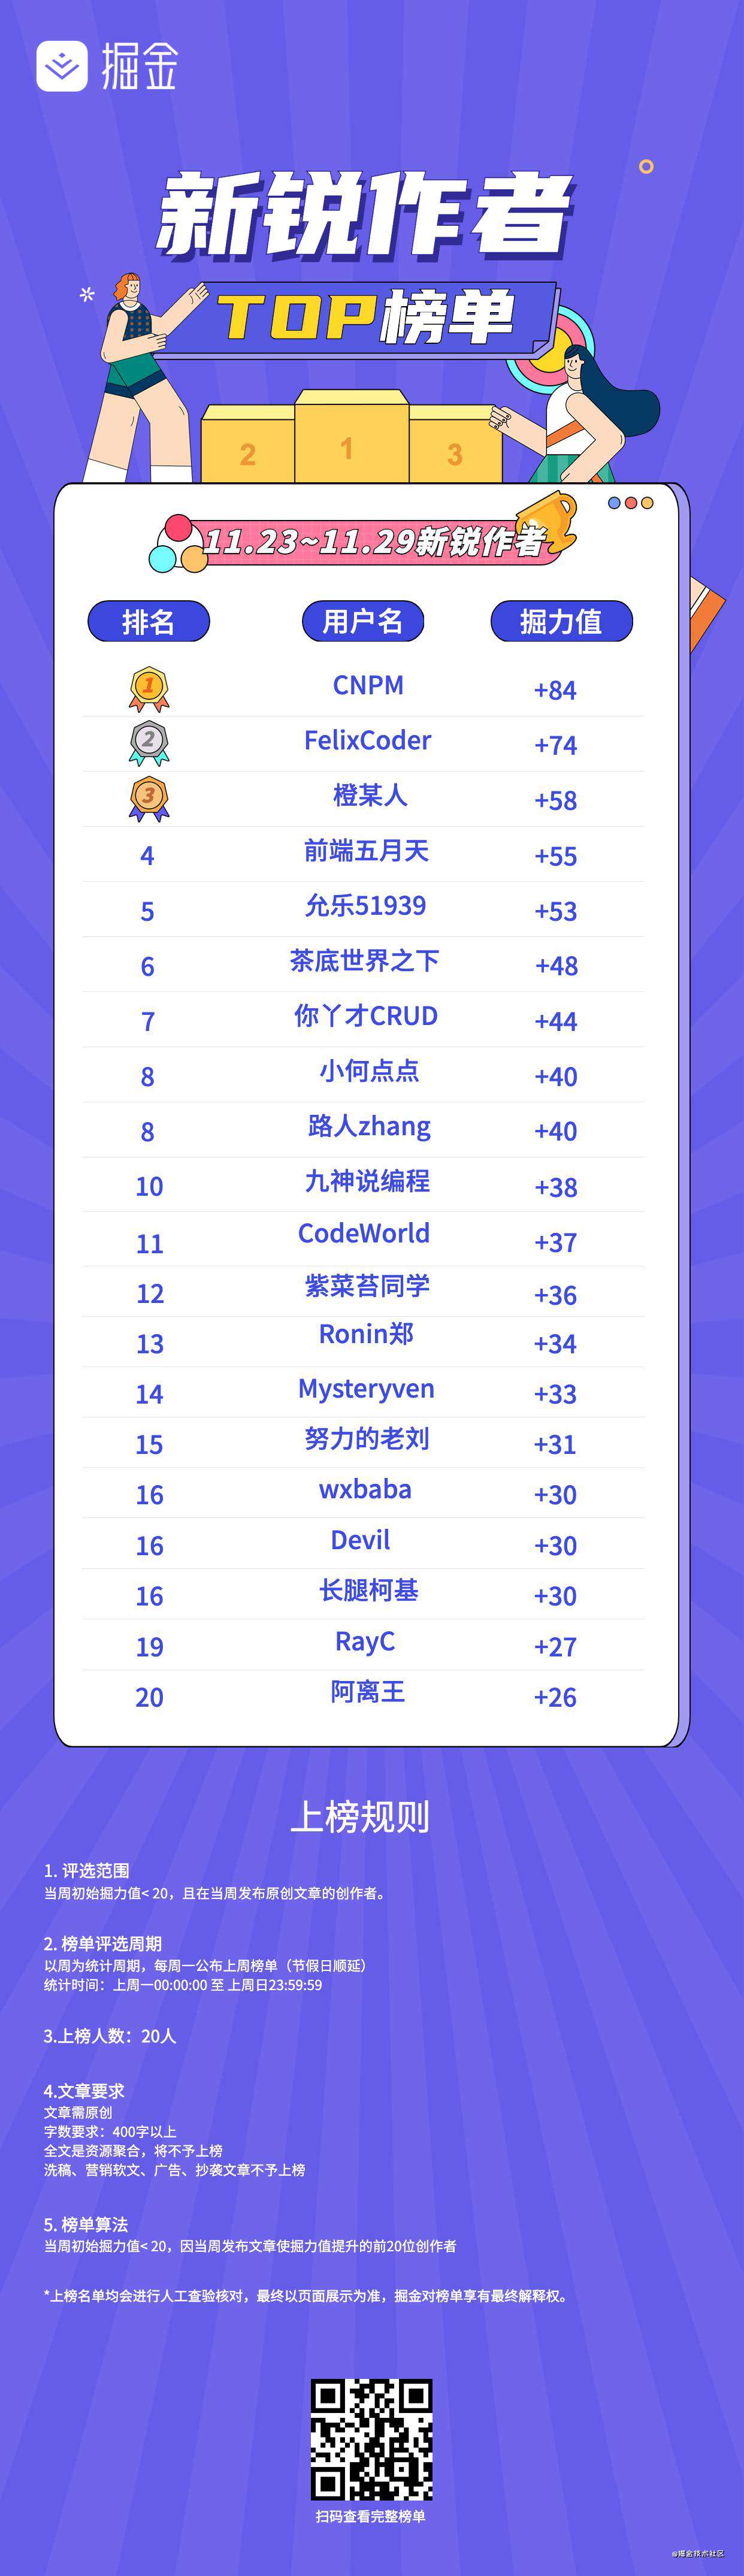 榜单公布 | 新锐作者排行榜(11.23~11.29)